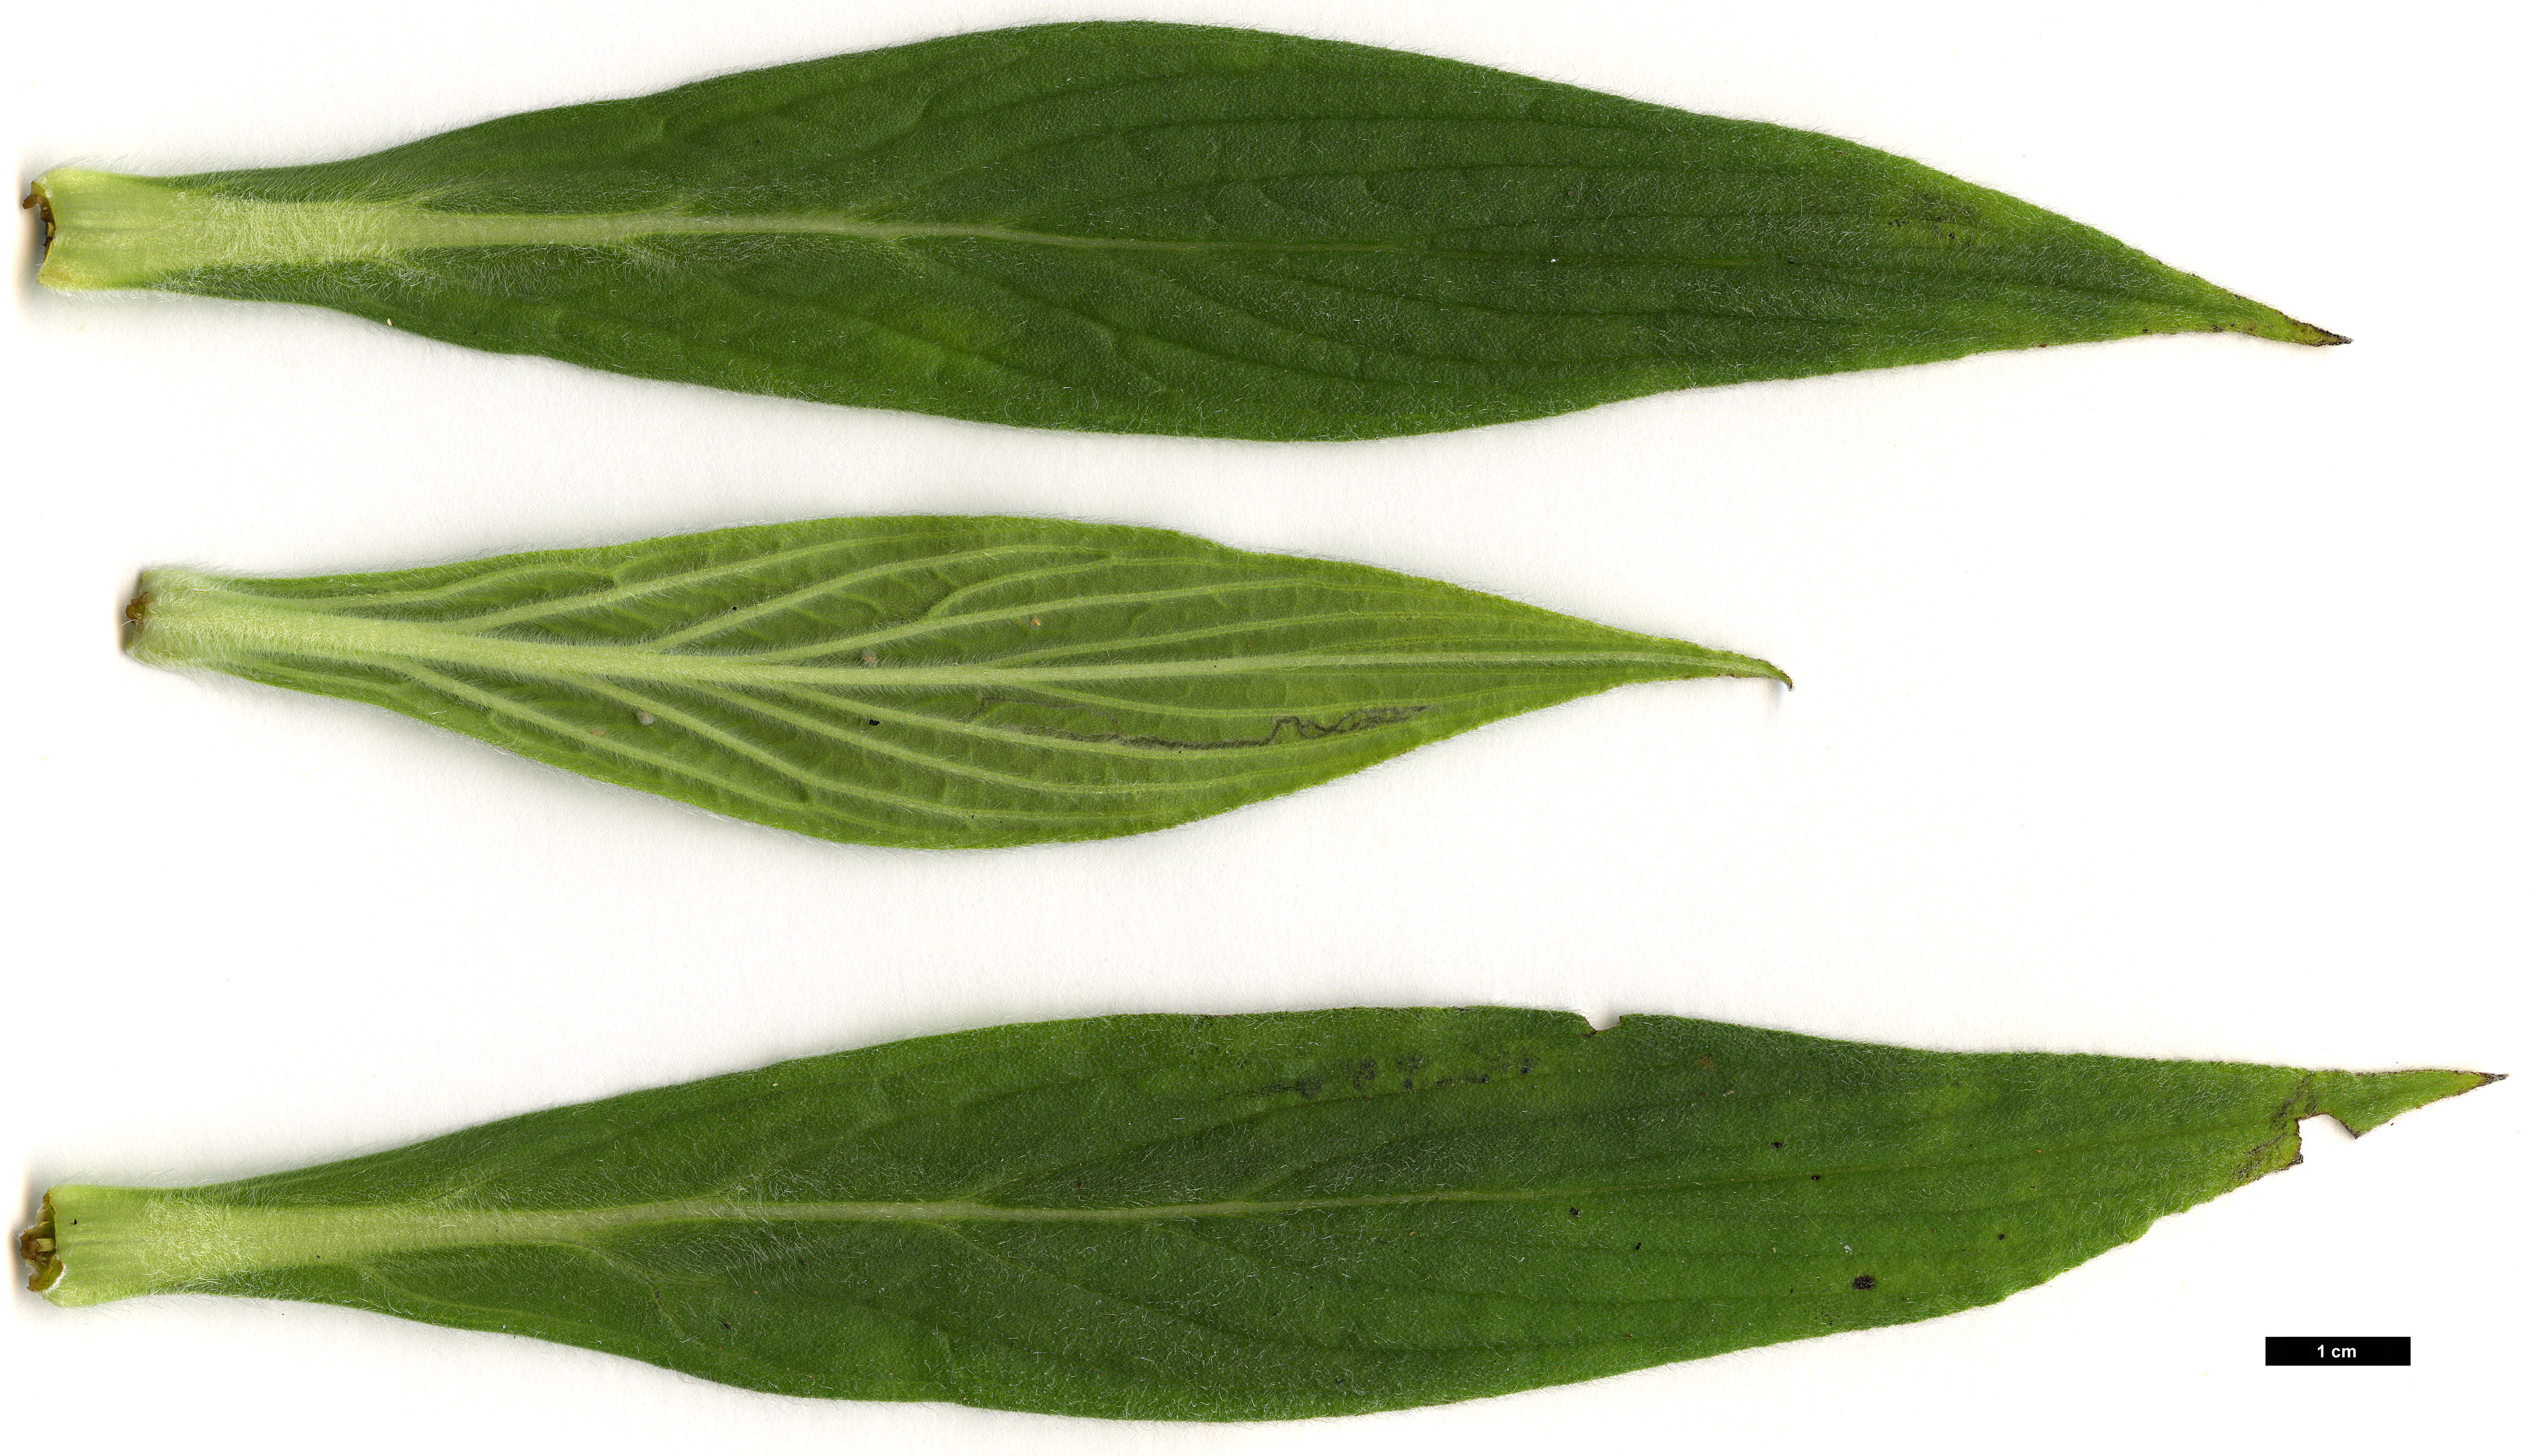 High resolution image: Family: Boraginaceae - Genus: Echium - Taxon: candicans